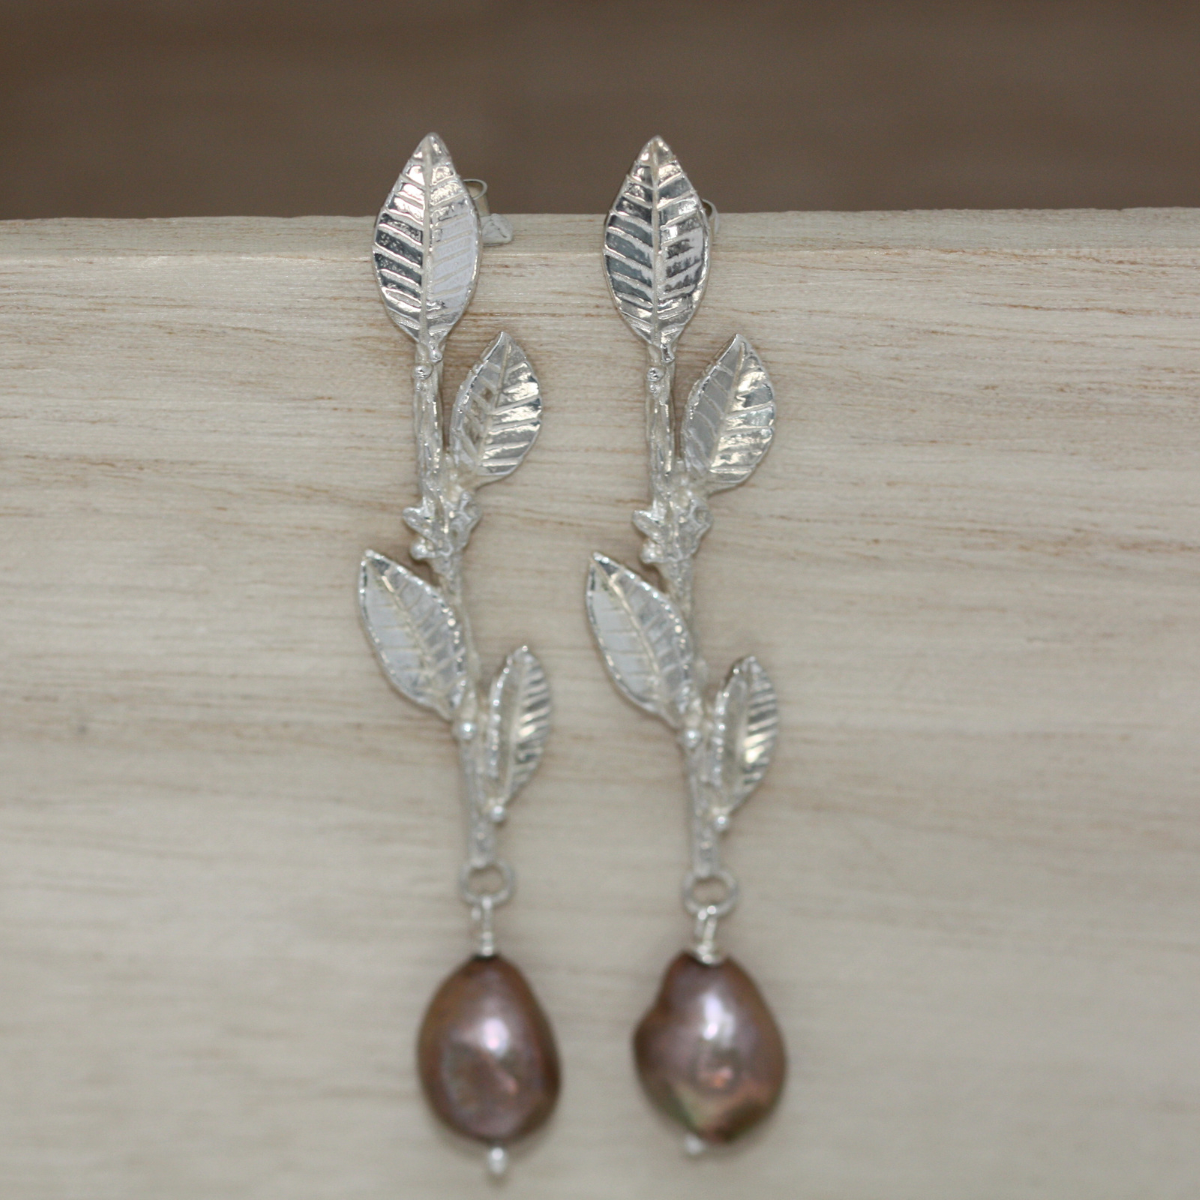 laurel leaf earrings